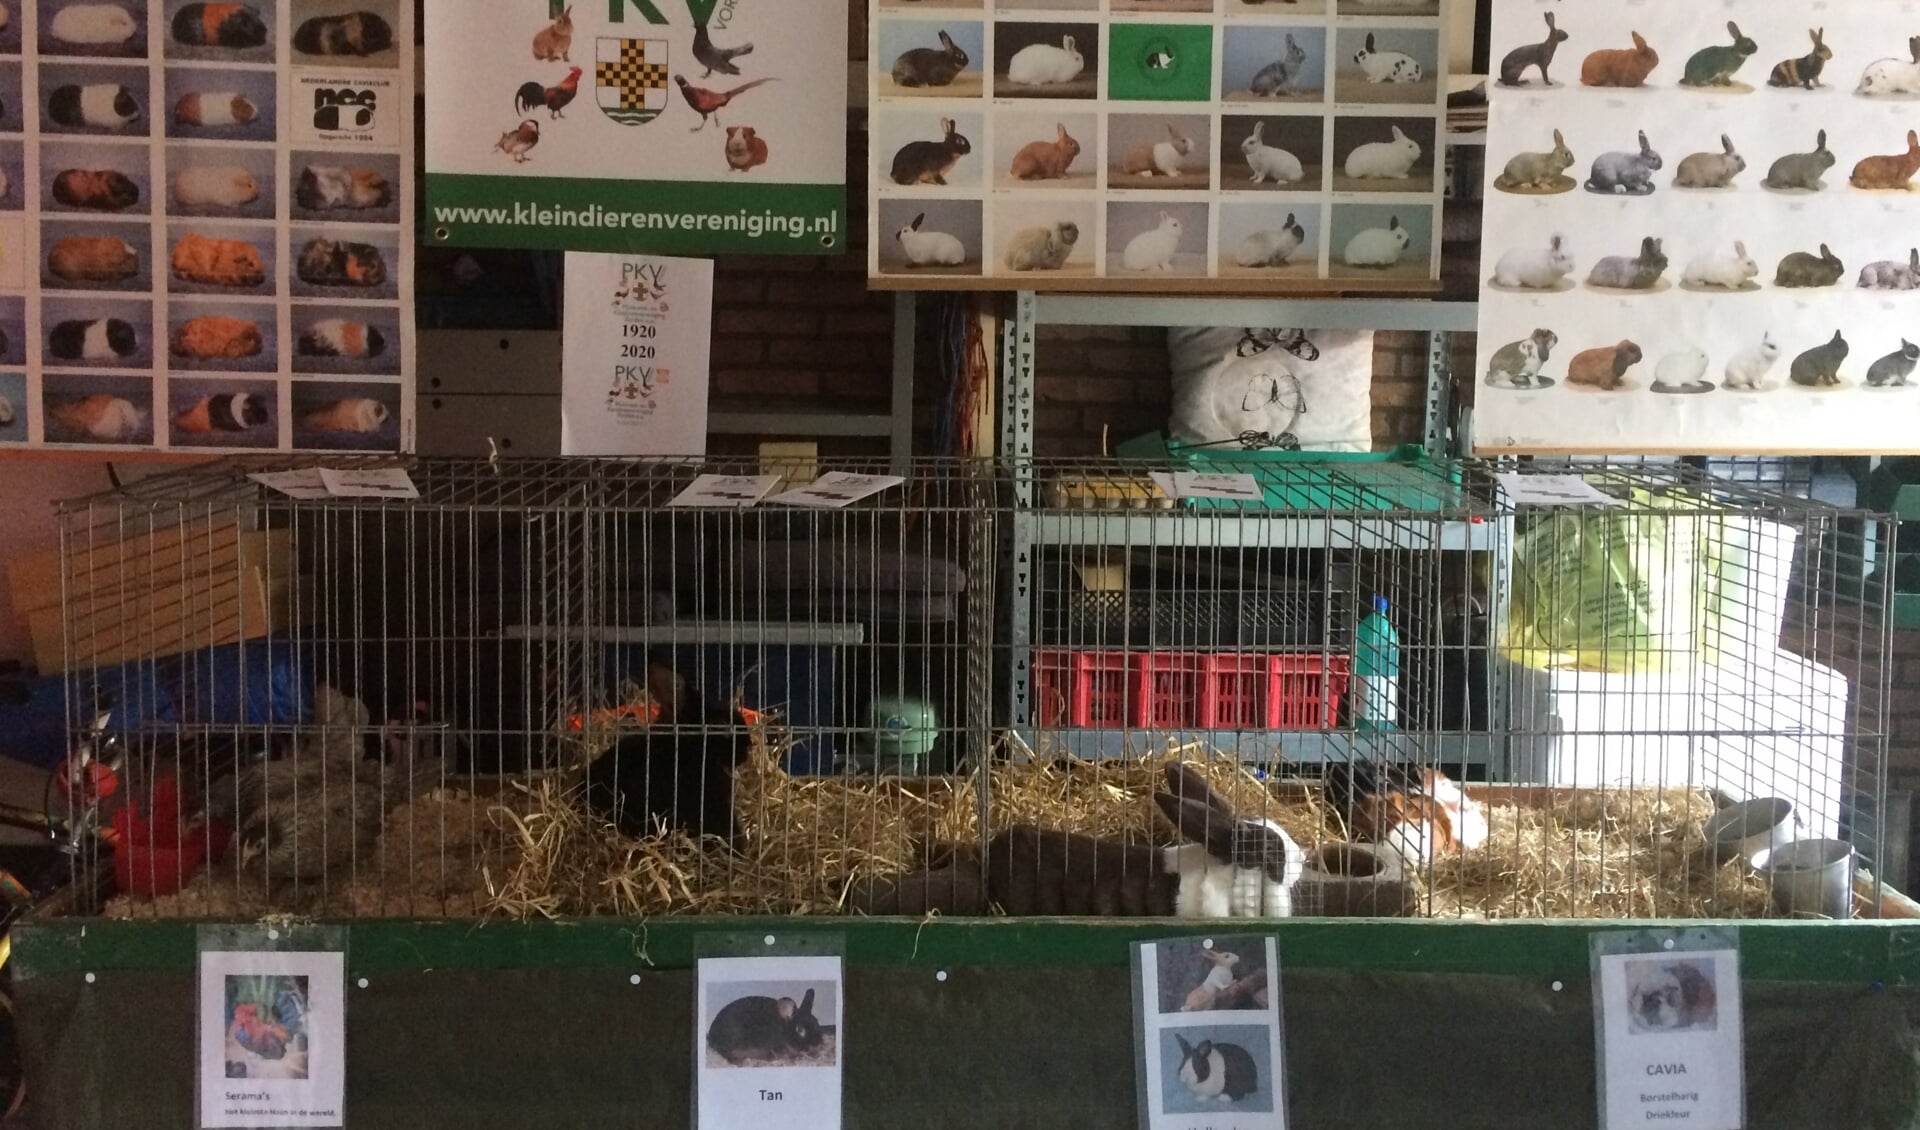 PKV vulde de open-tuindagen aan met kuikens, serama’s, konijnen, cavia’s en met allerlei boeken en posters over kleindieren. Foto: PR 